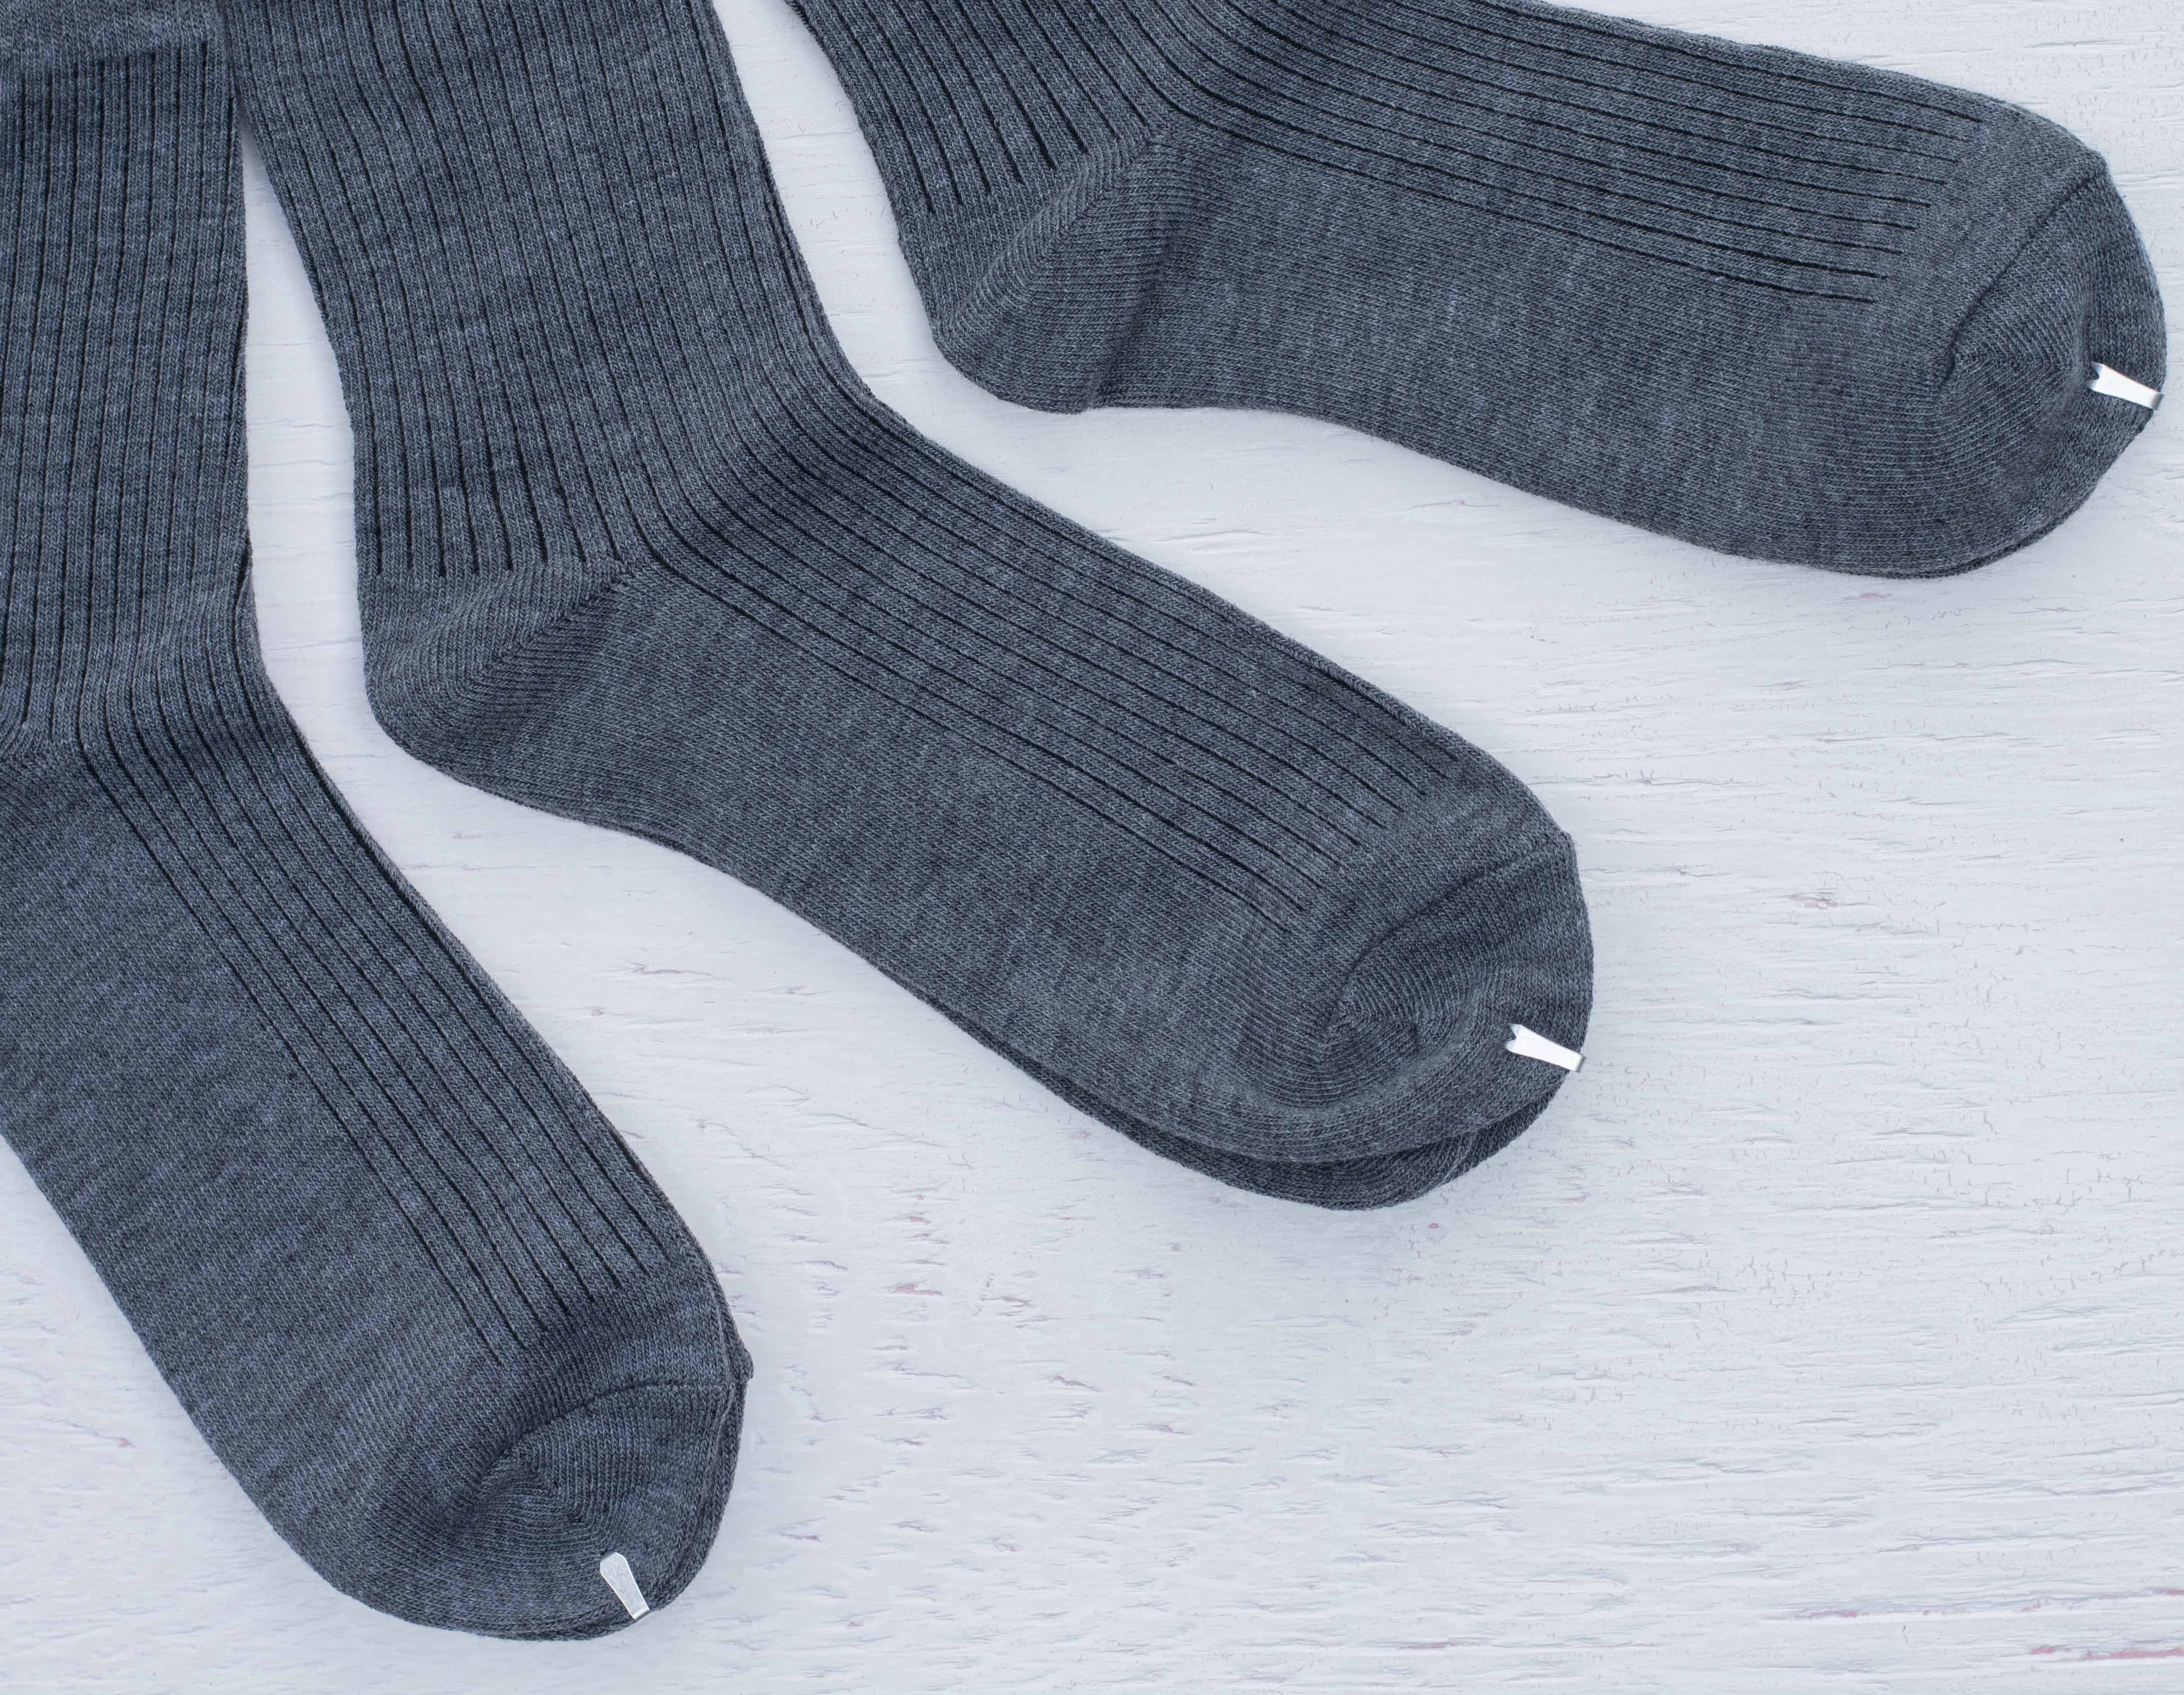 09 socks packaging - socks Clips